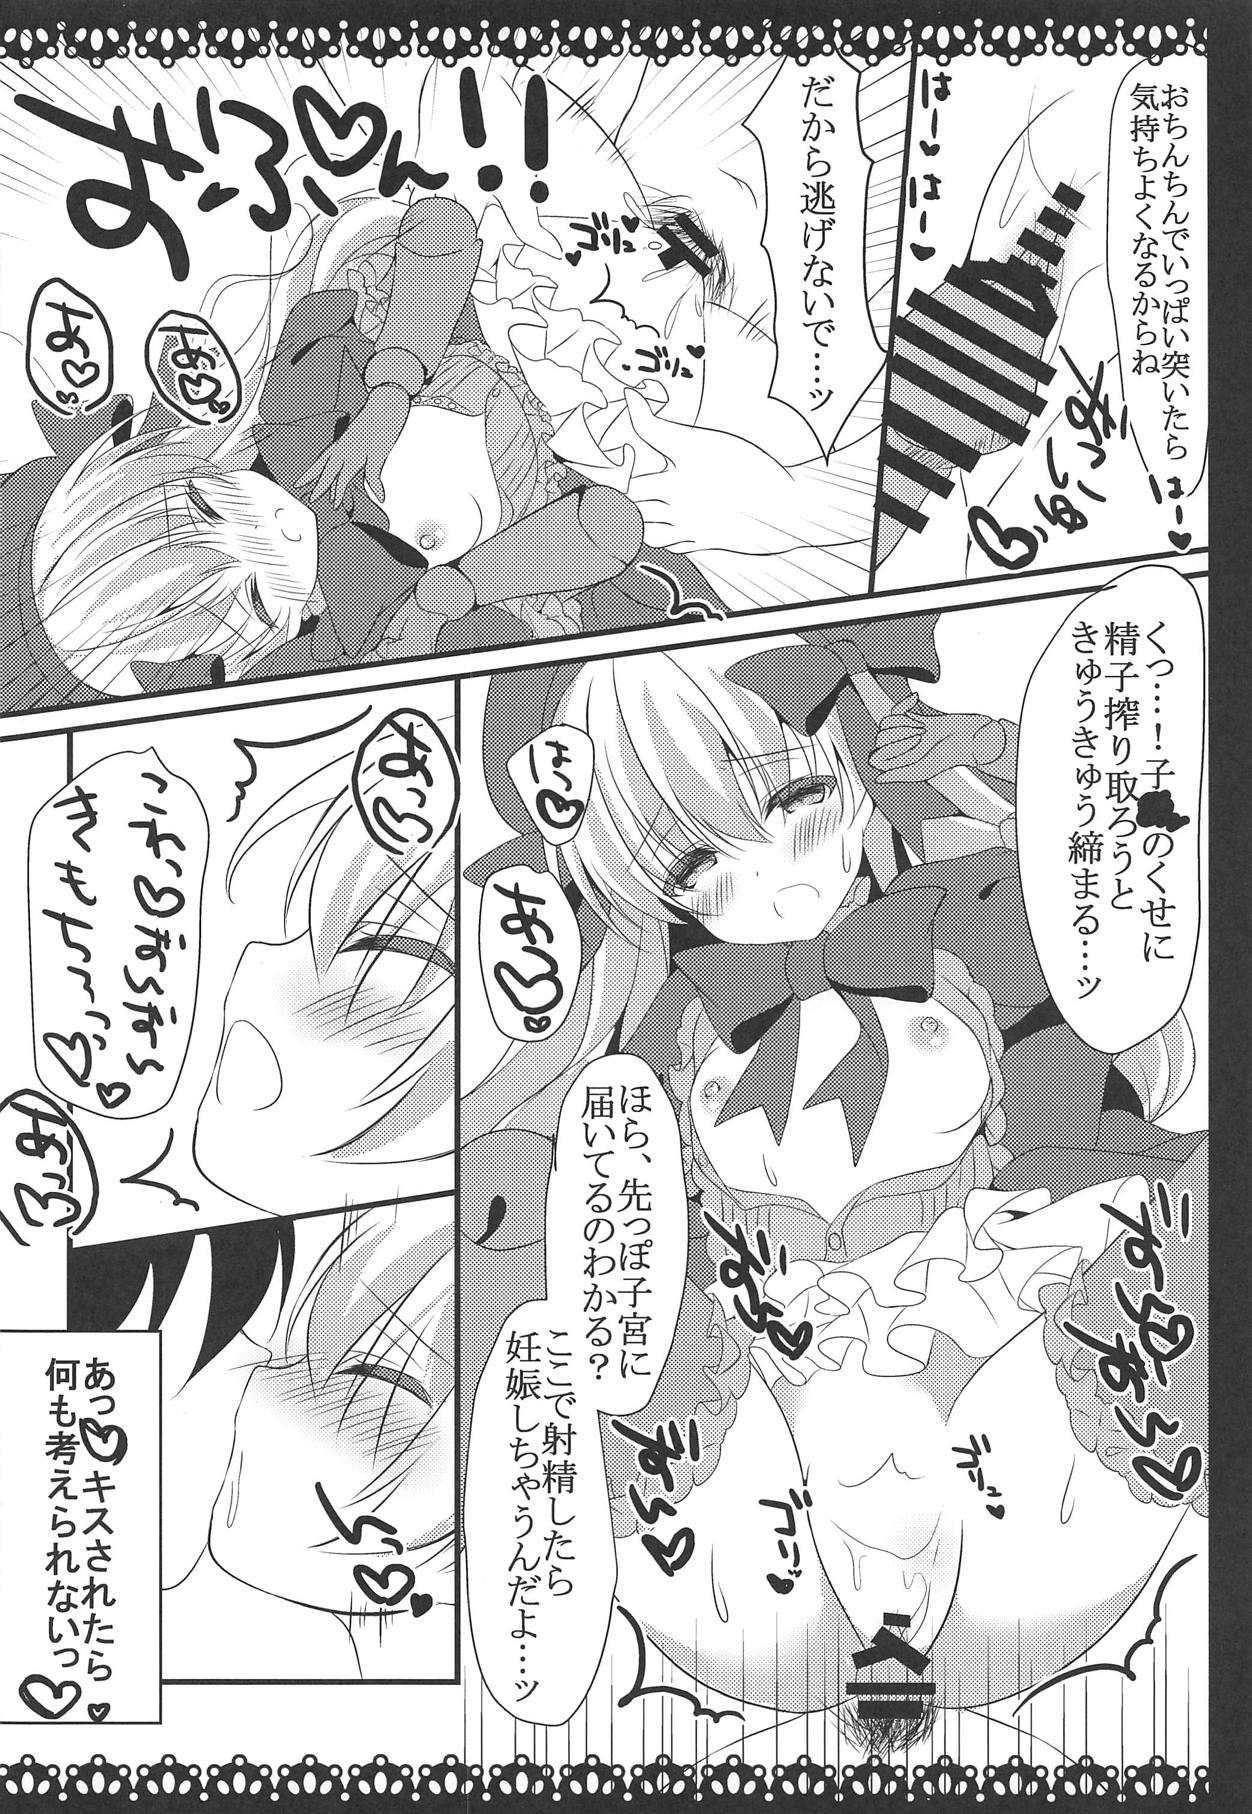 Messy Anata no Tame no Monogatari - Fate grand order Banho - Page 11